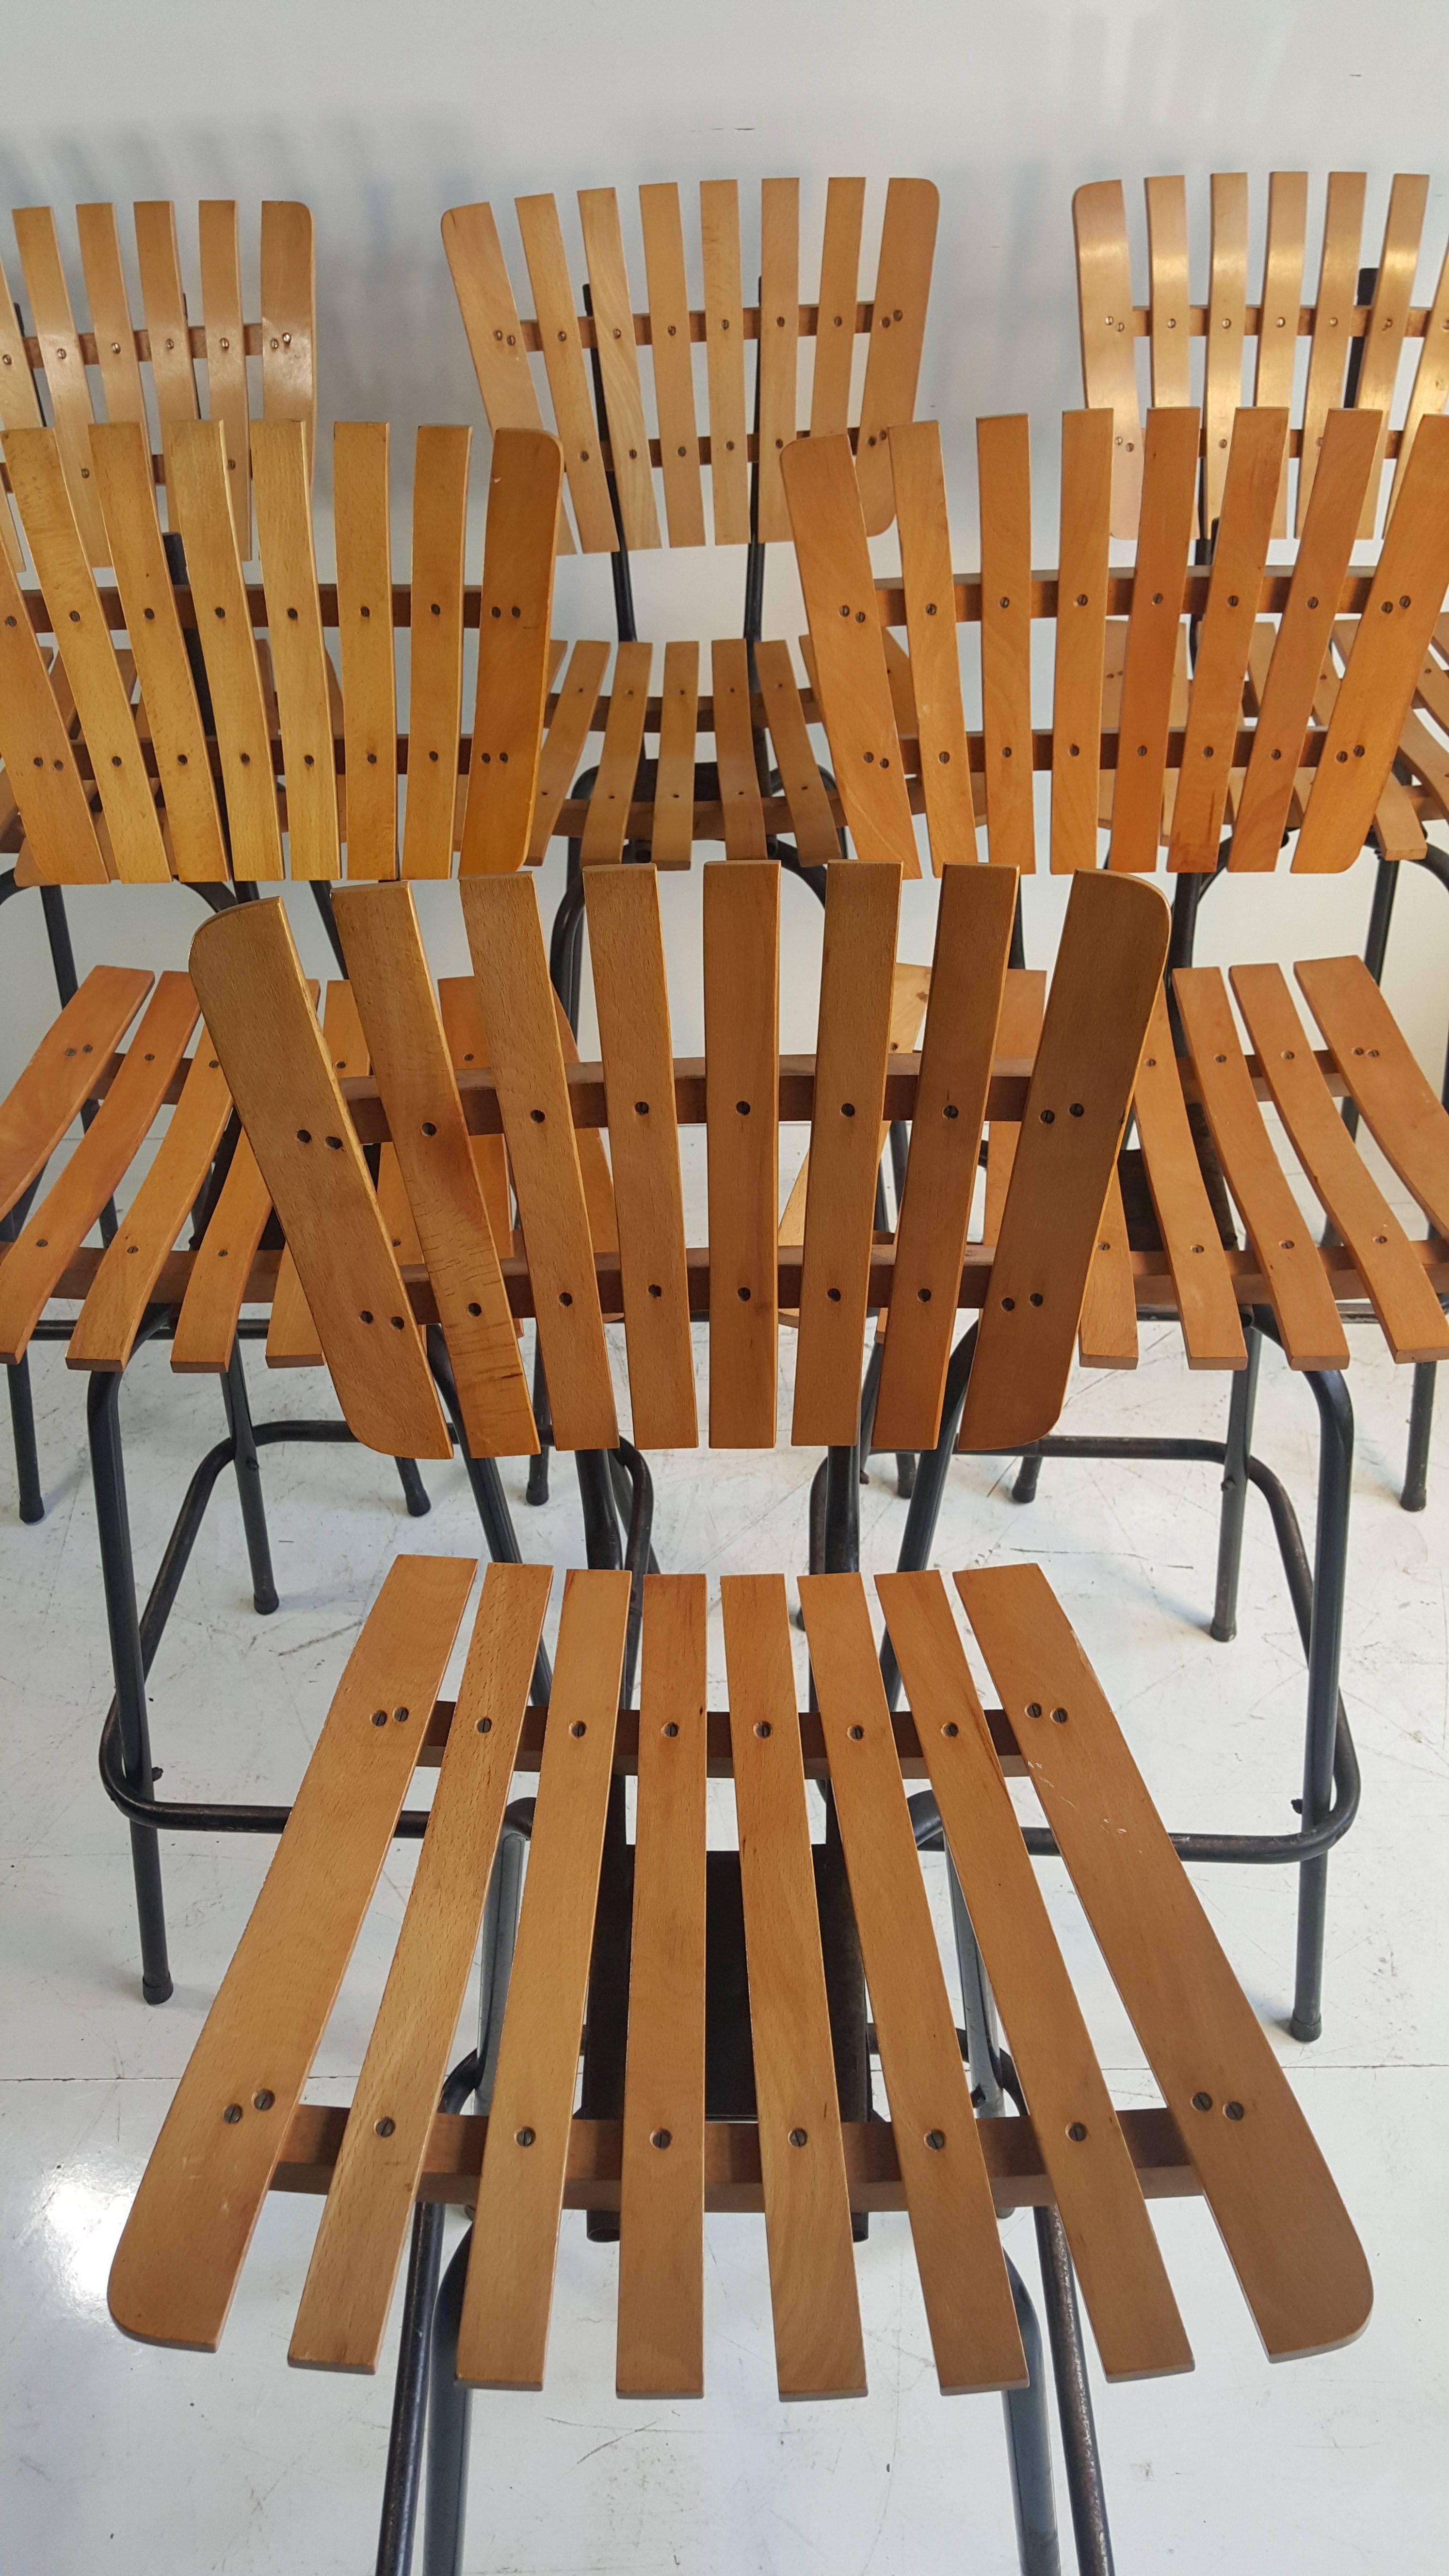 Set of six matching bar stools designed by Arthur Umanoff, Classic Mid-Century Modern, slatted wood seats and backs, tubular iron bases, smooth swivel.